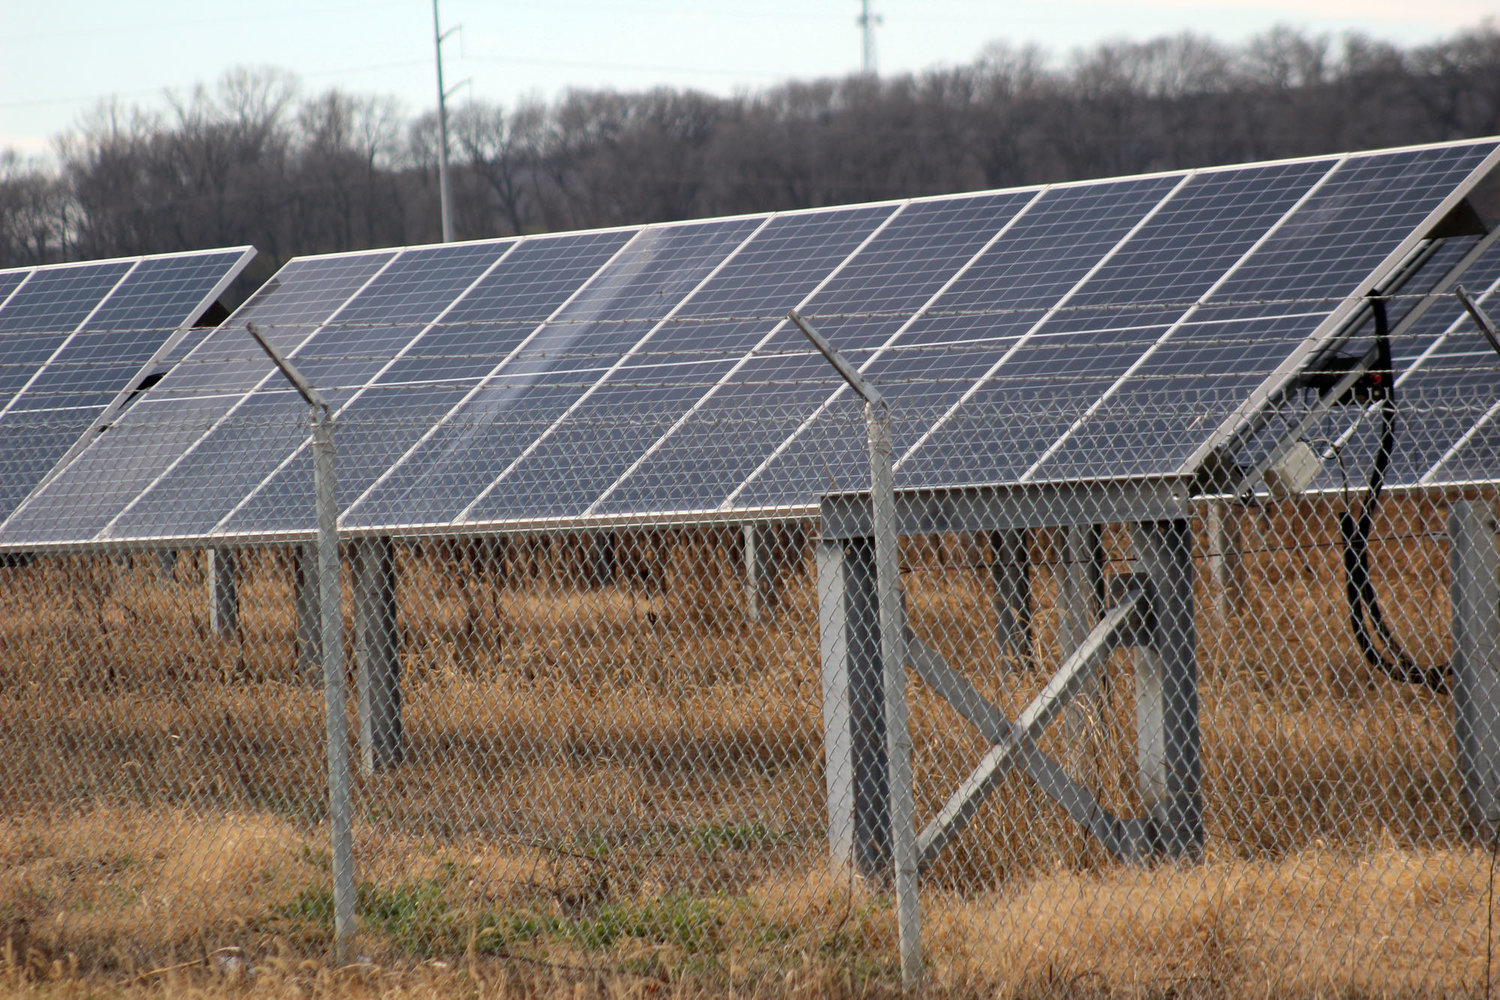 OPPD, Center for Rural Affairs provide insight on solar panels Washington County Enterprise